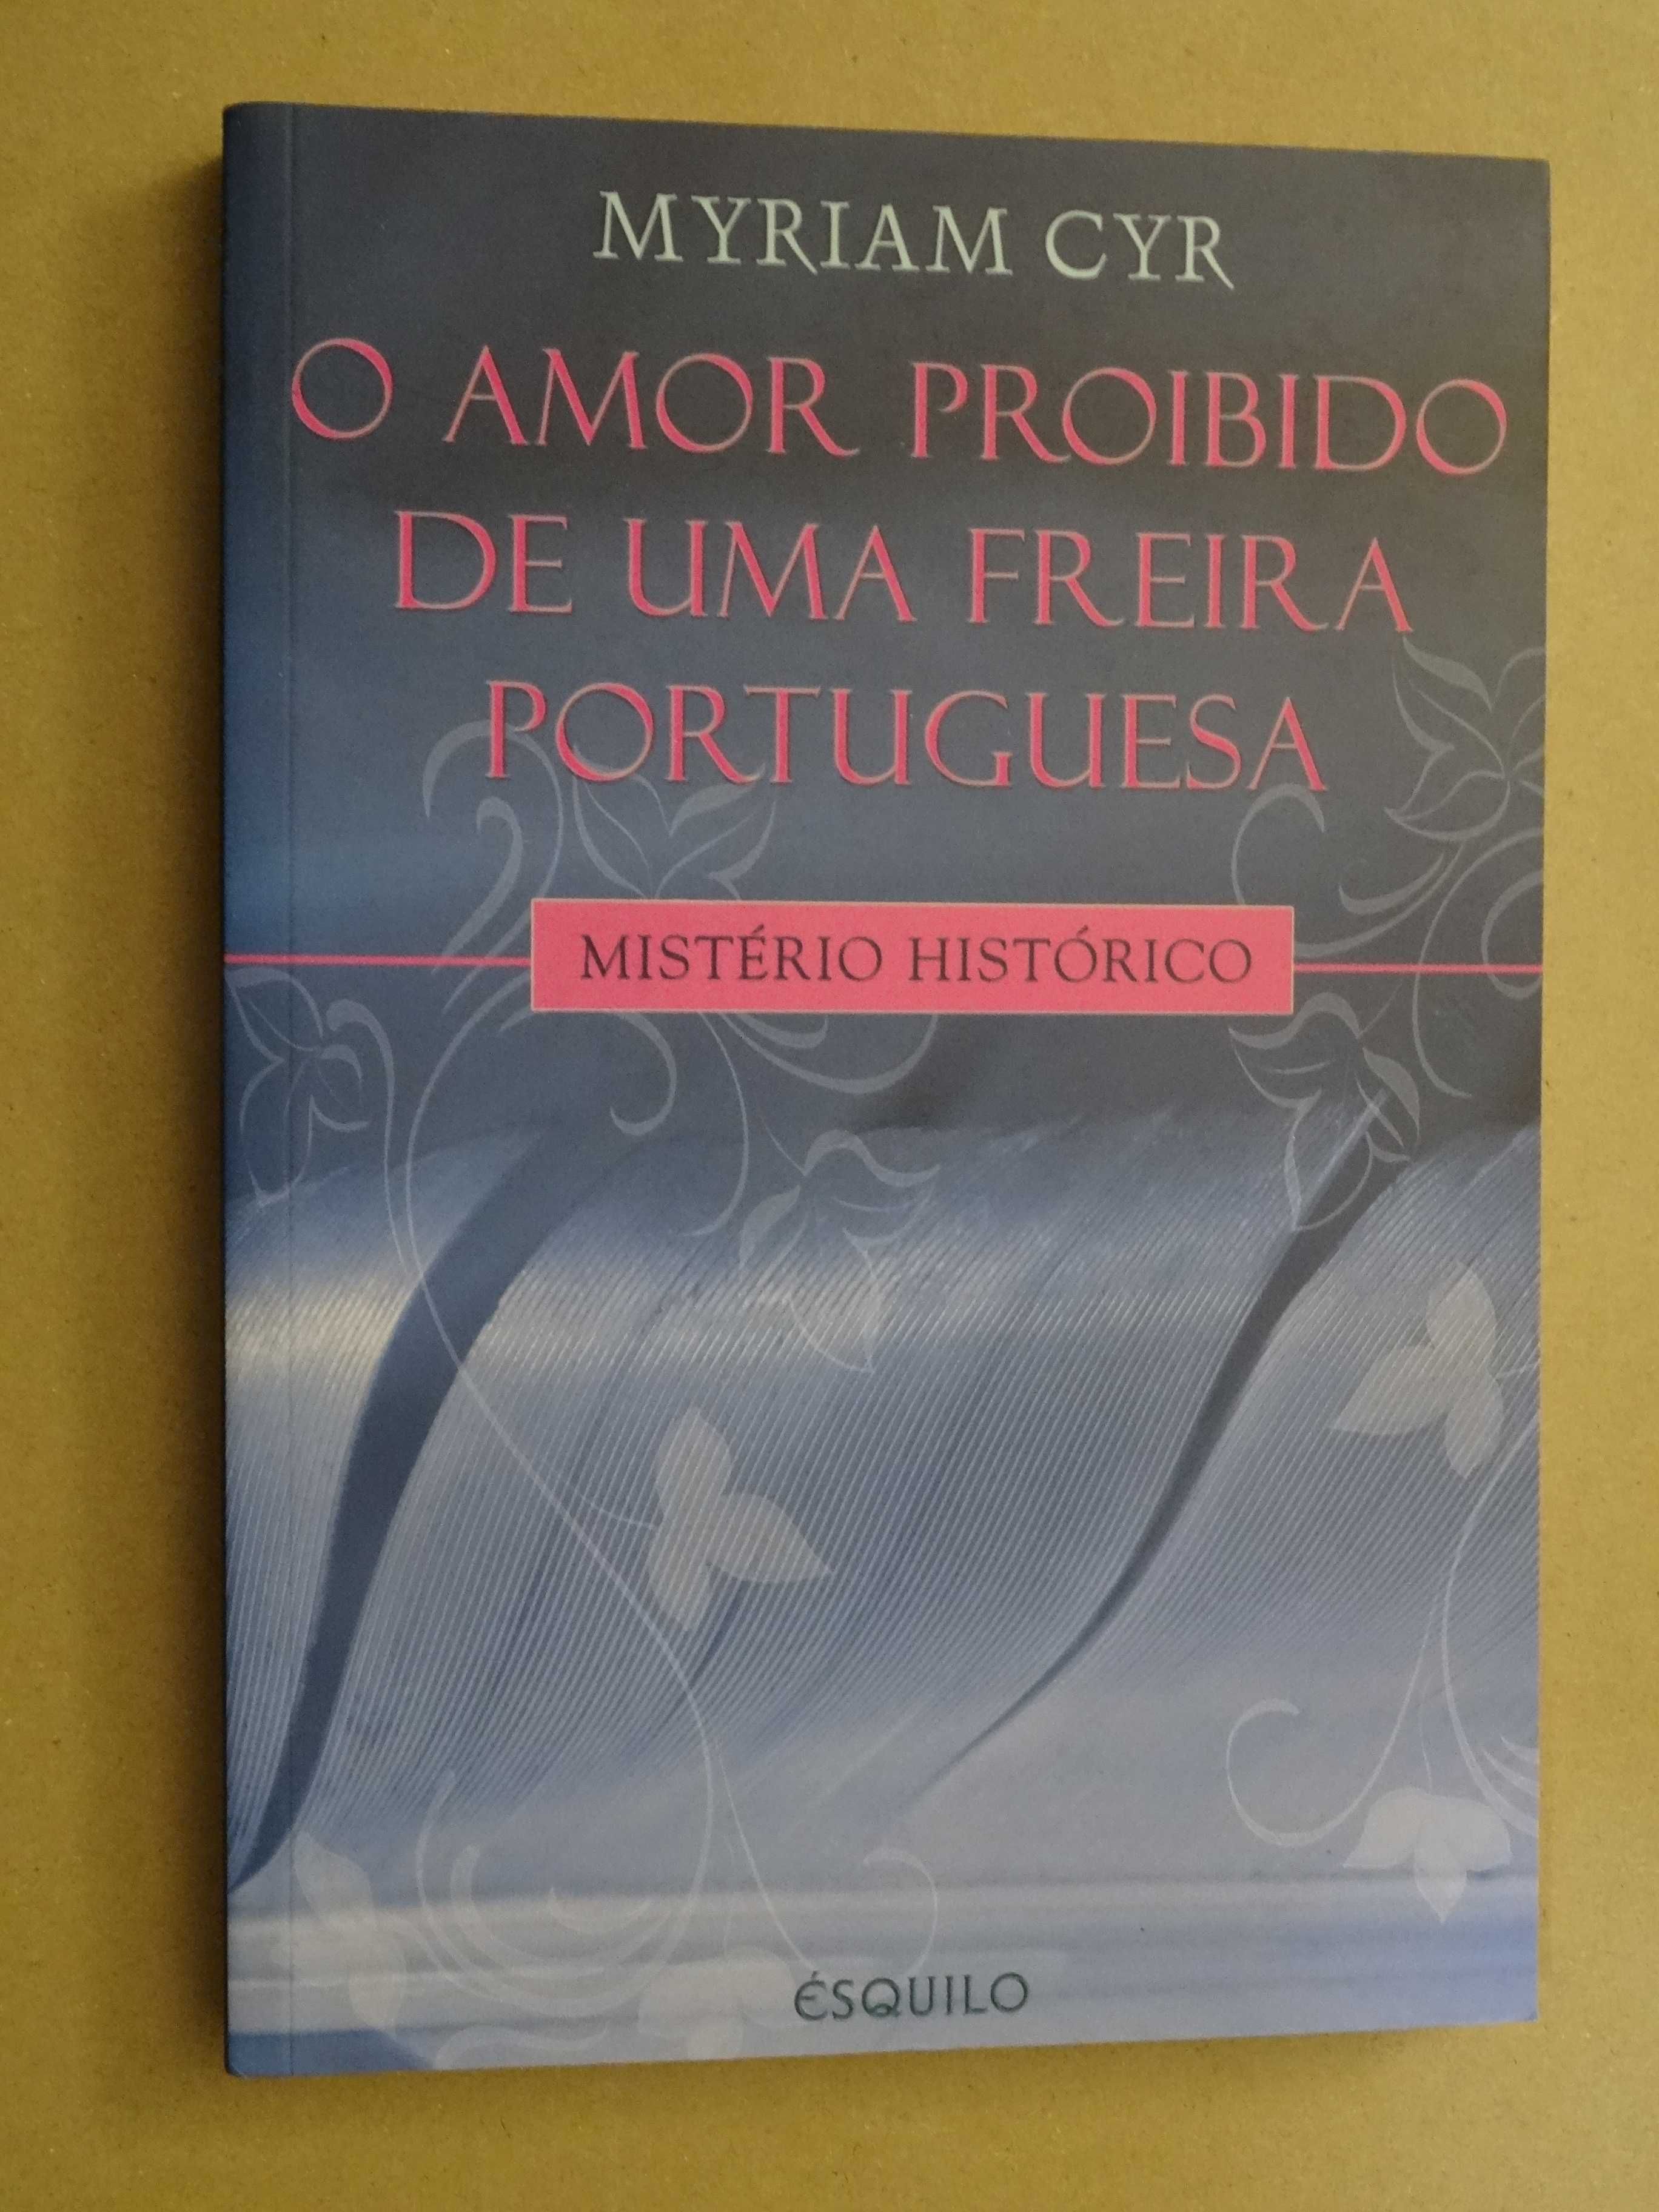 O Amor Proibido de uma Freira Portuguesa de Myriam Cyr - 1ª Edição